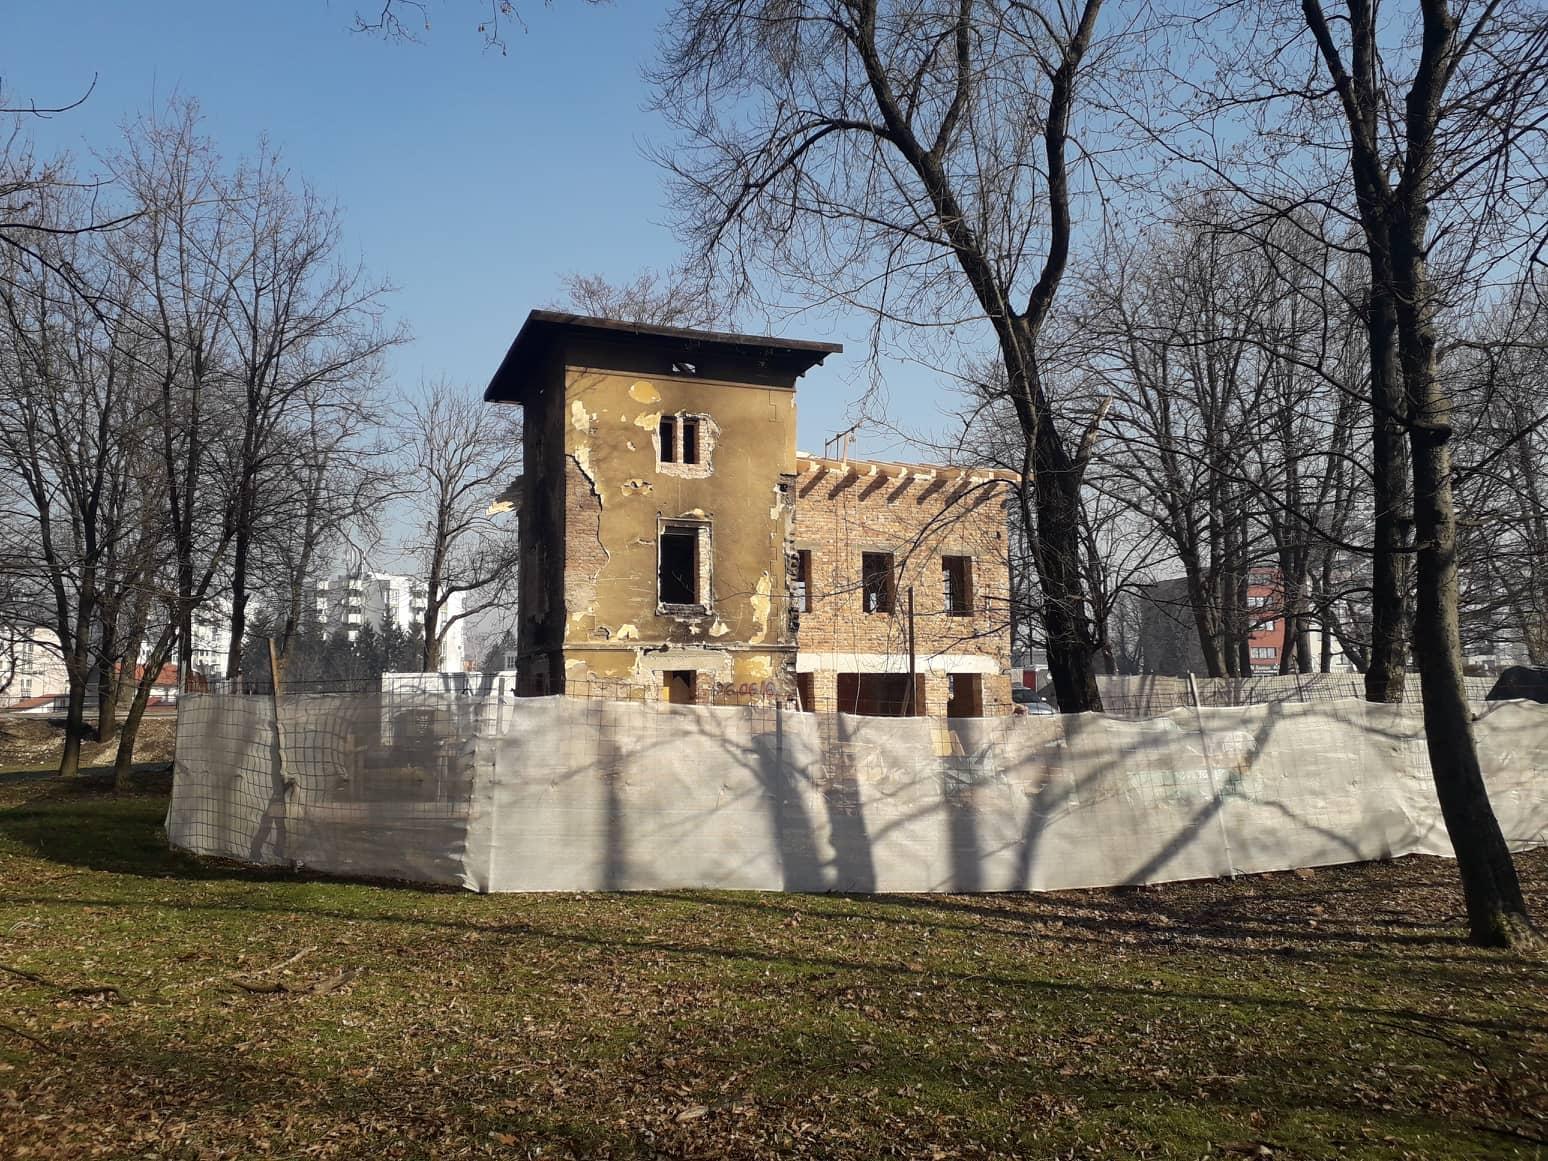 Renoviranje ruševnog objekta u parku košta 650.000 KM - Avaz